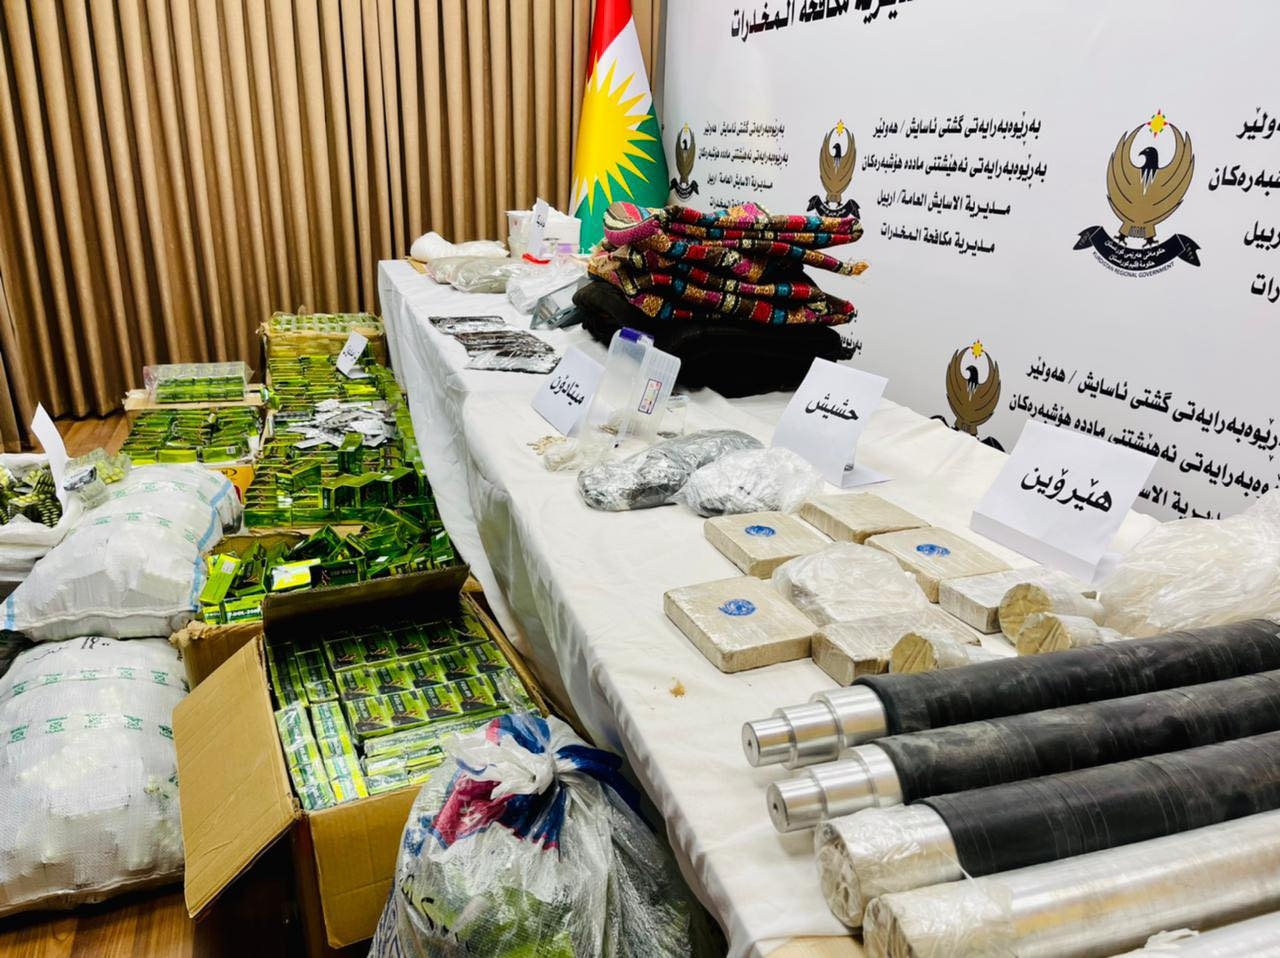 Major Drug Bust in Erbil Province: Over 100 Kilograms of Narcotics Seized